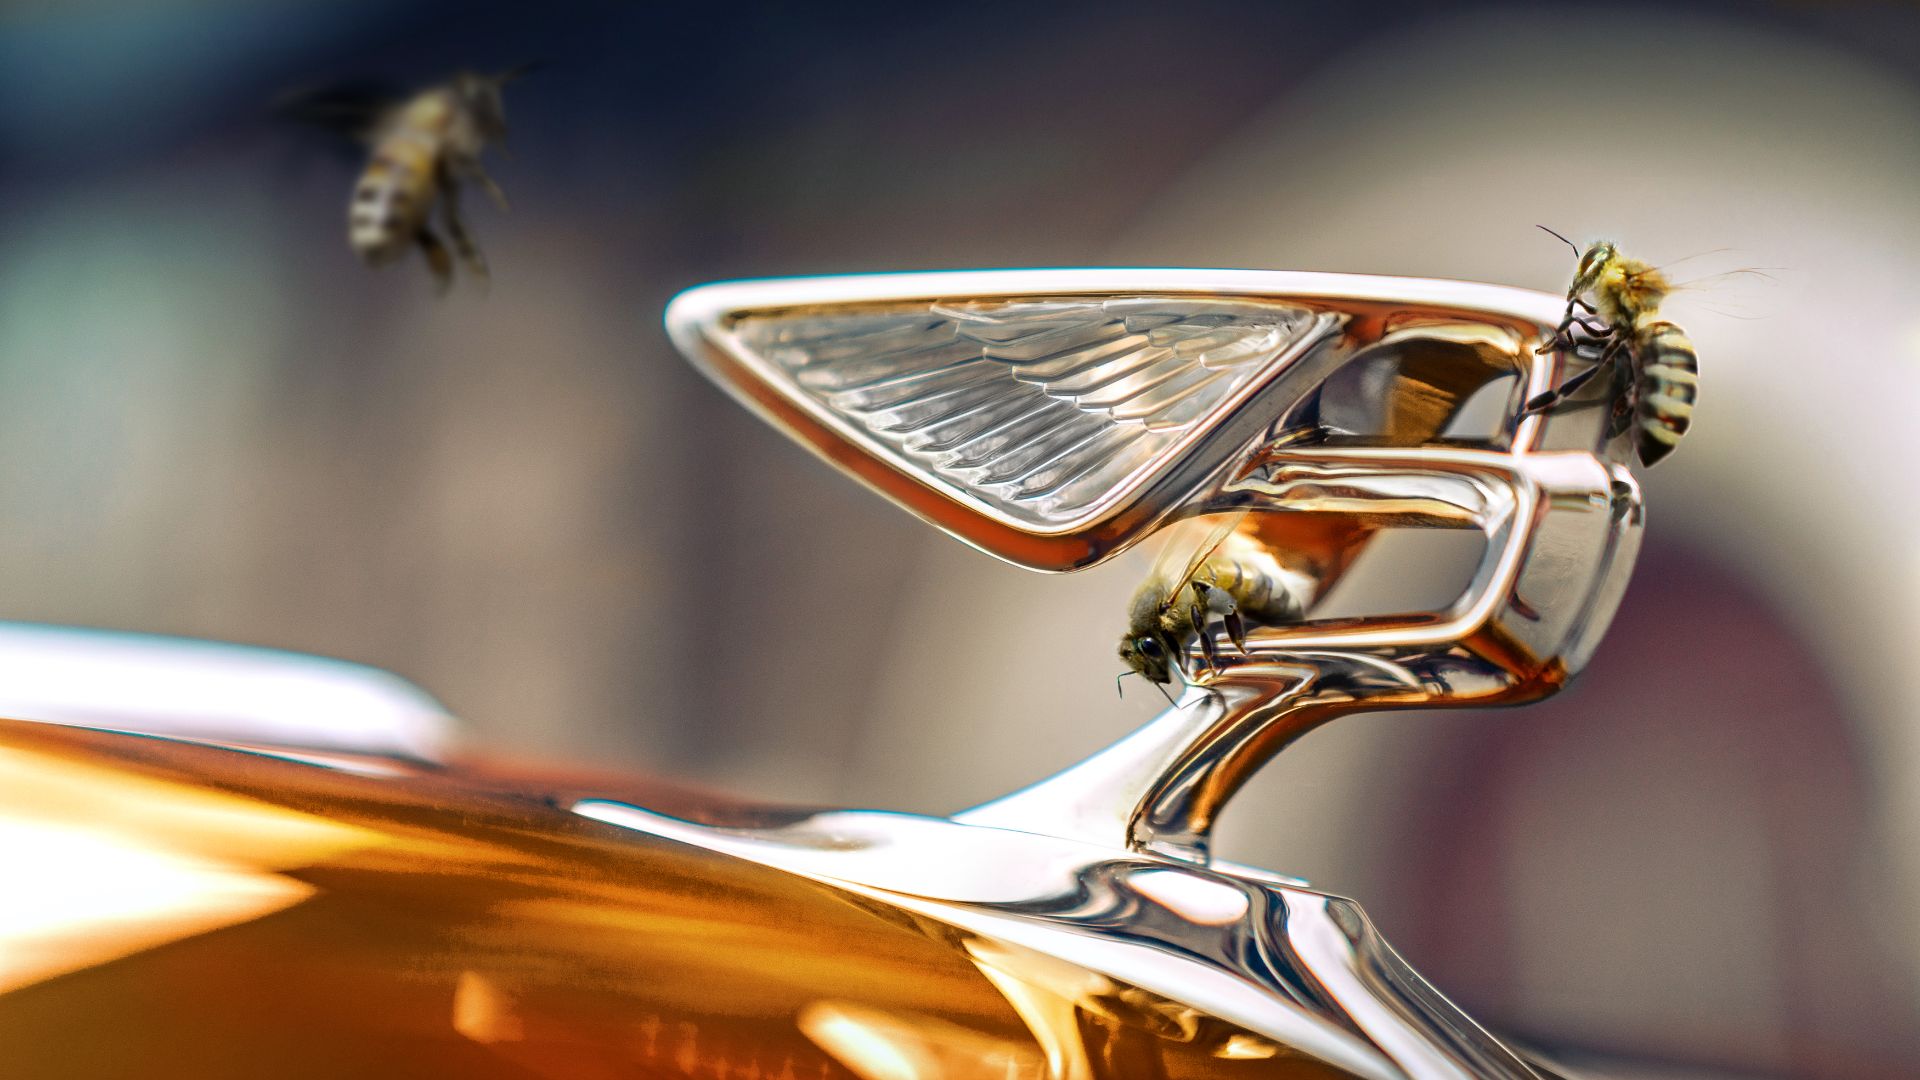 Bentley has actual flying bees